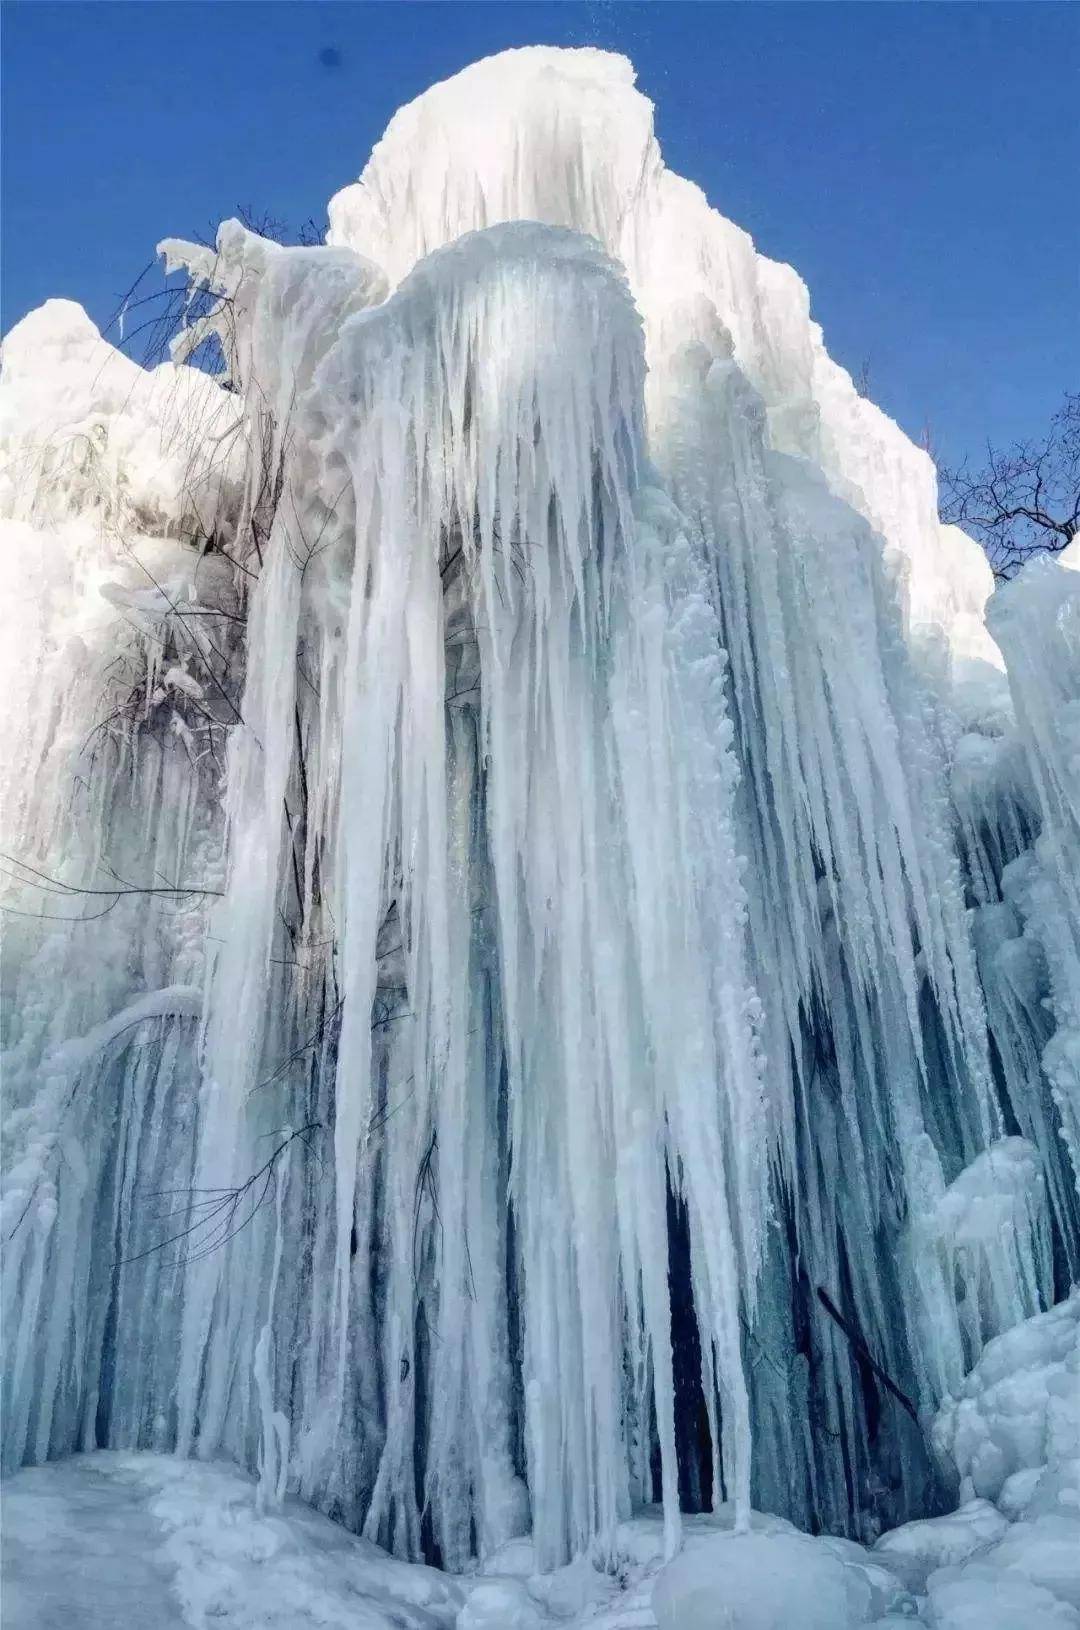 京西古道冰瀑图片